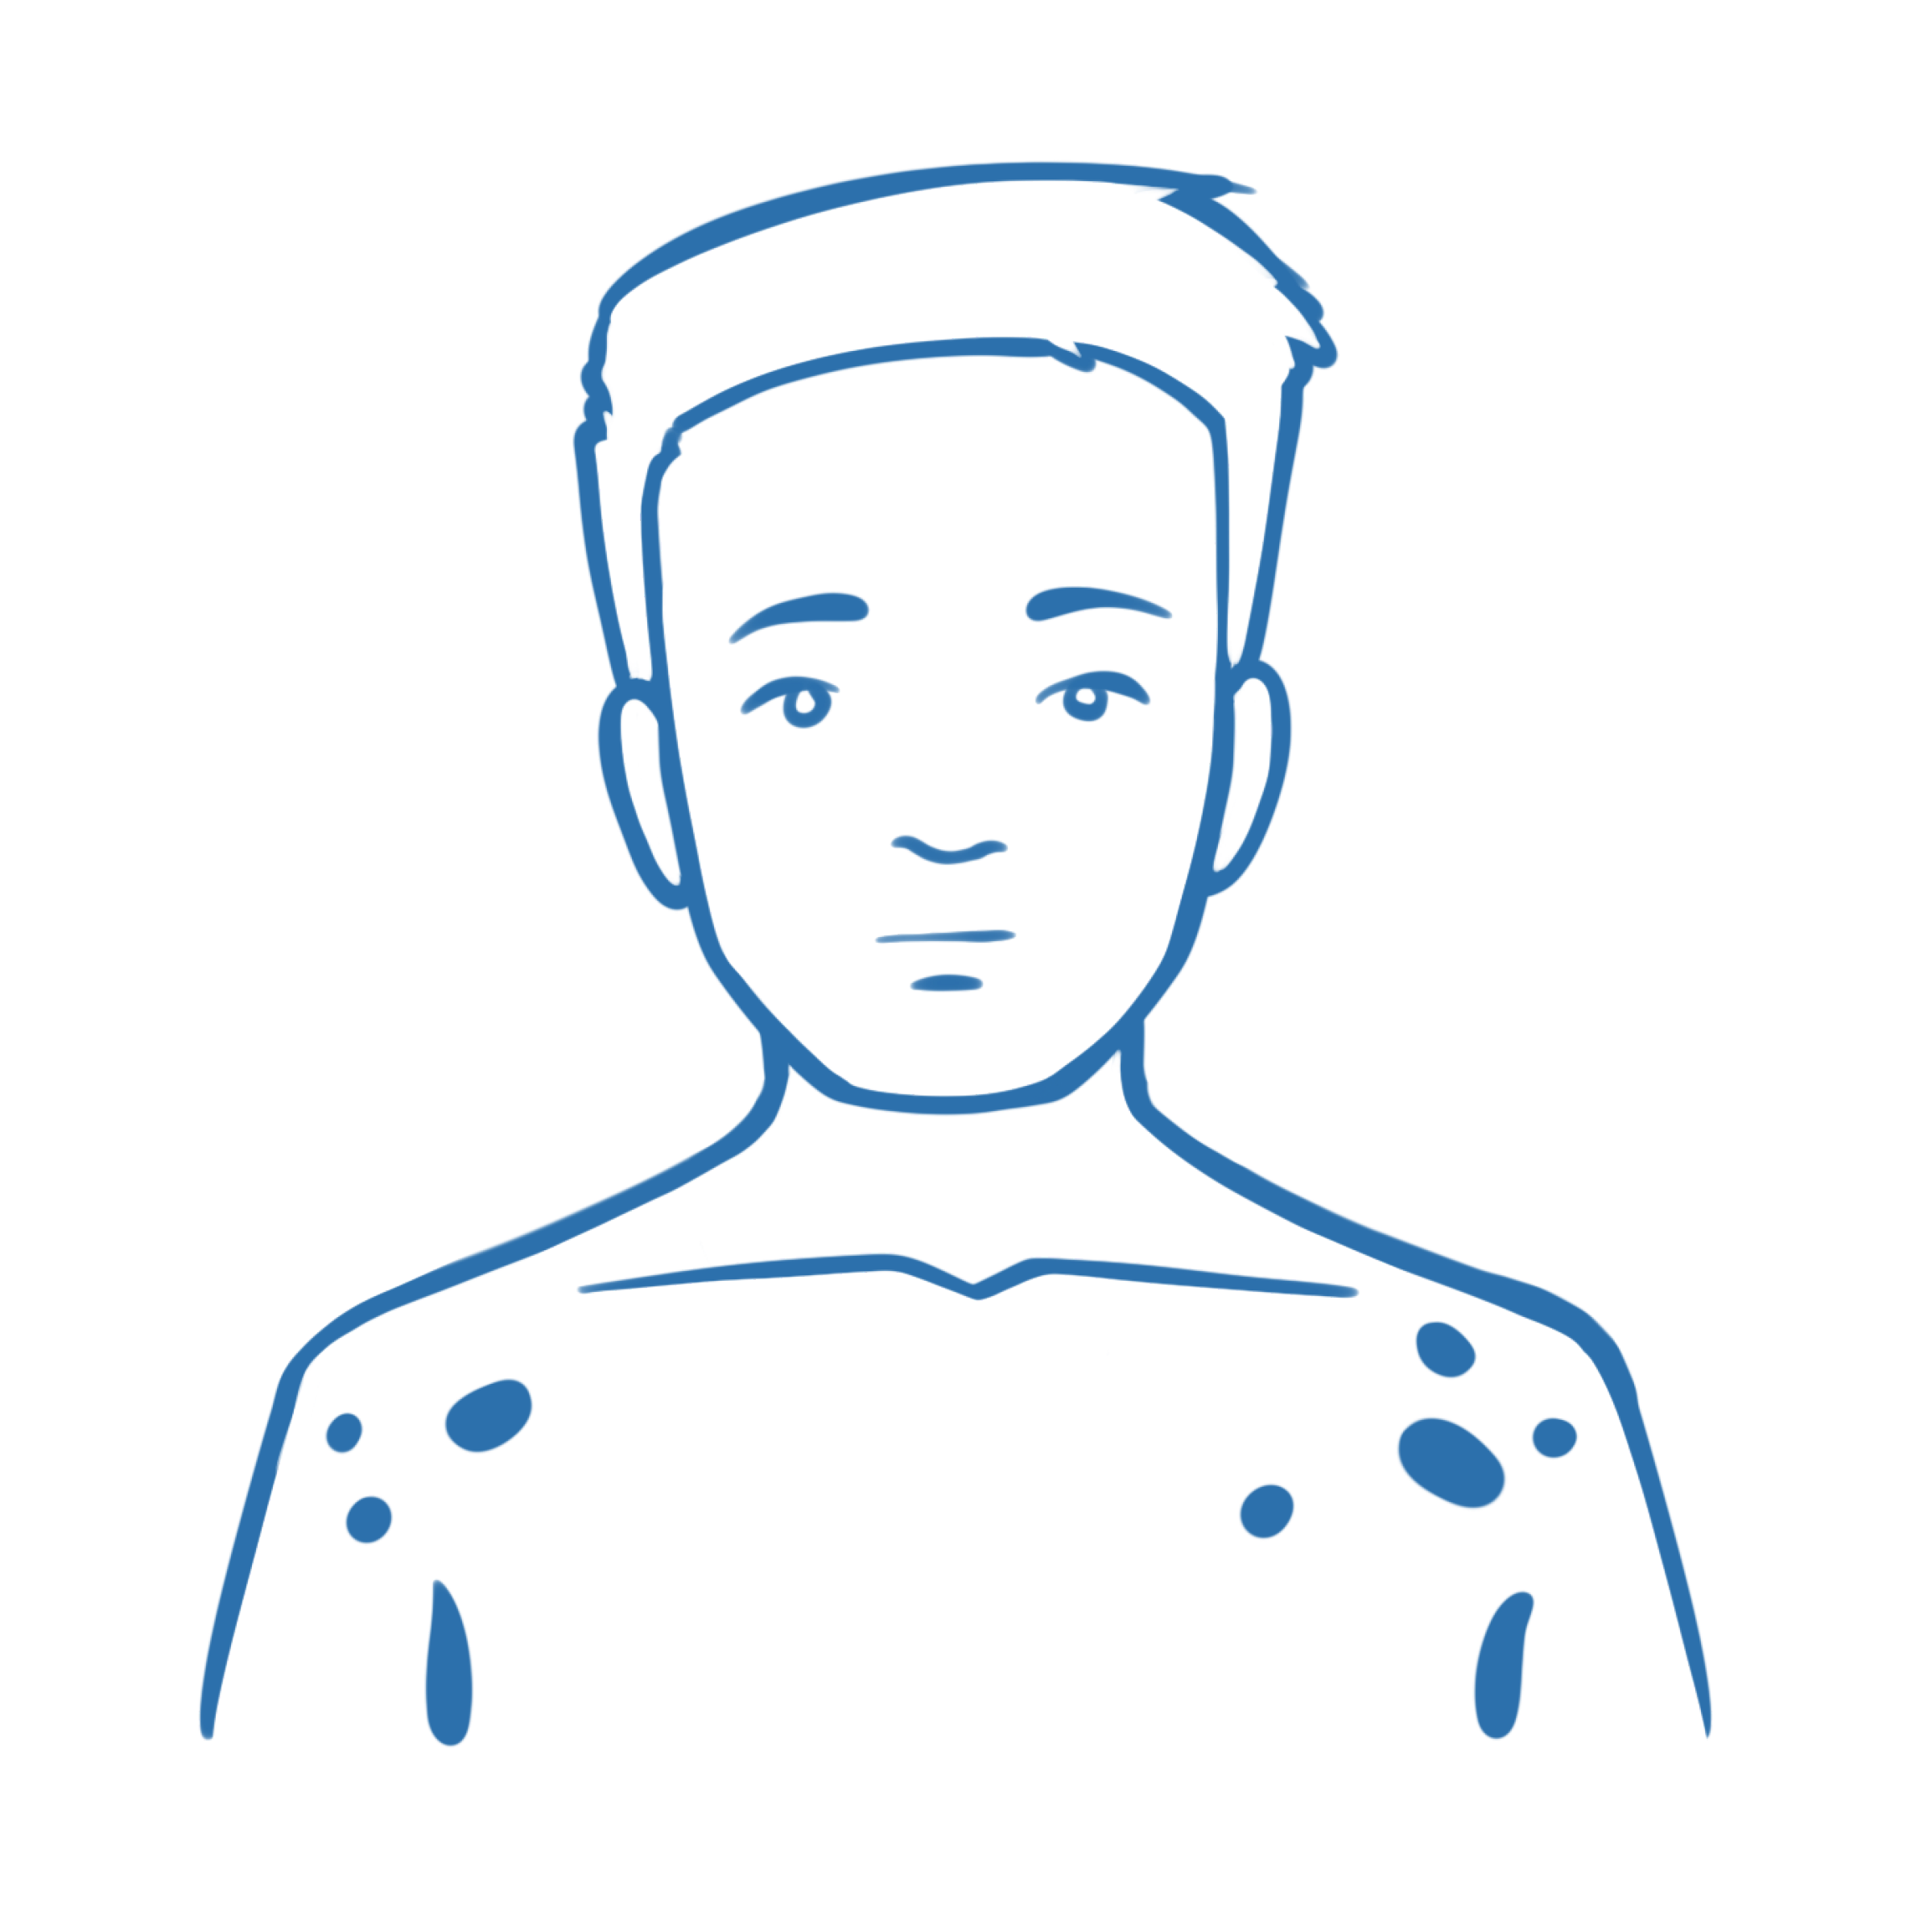 Illustrierter Junge in der Frontansicht mit blauen Flecken auf im Schulterbereich.